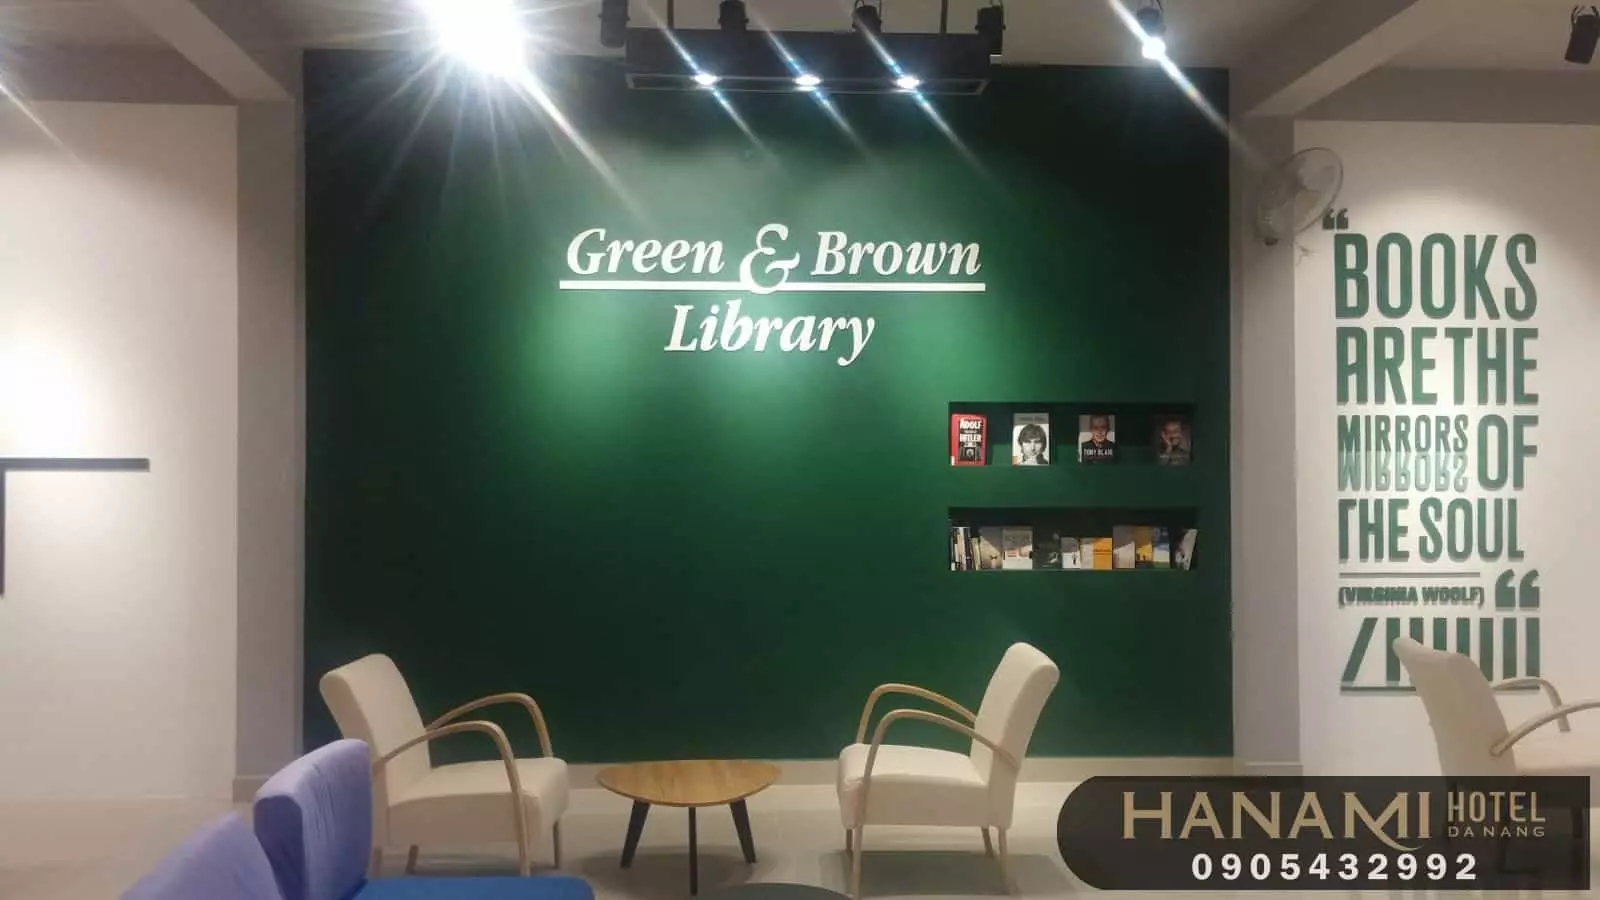 Green & Brown Library hoạt động như một quán cà phê, hiệu sách và thư viện